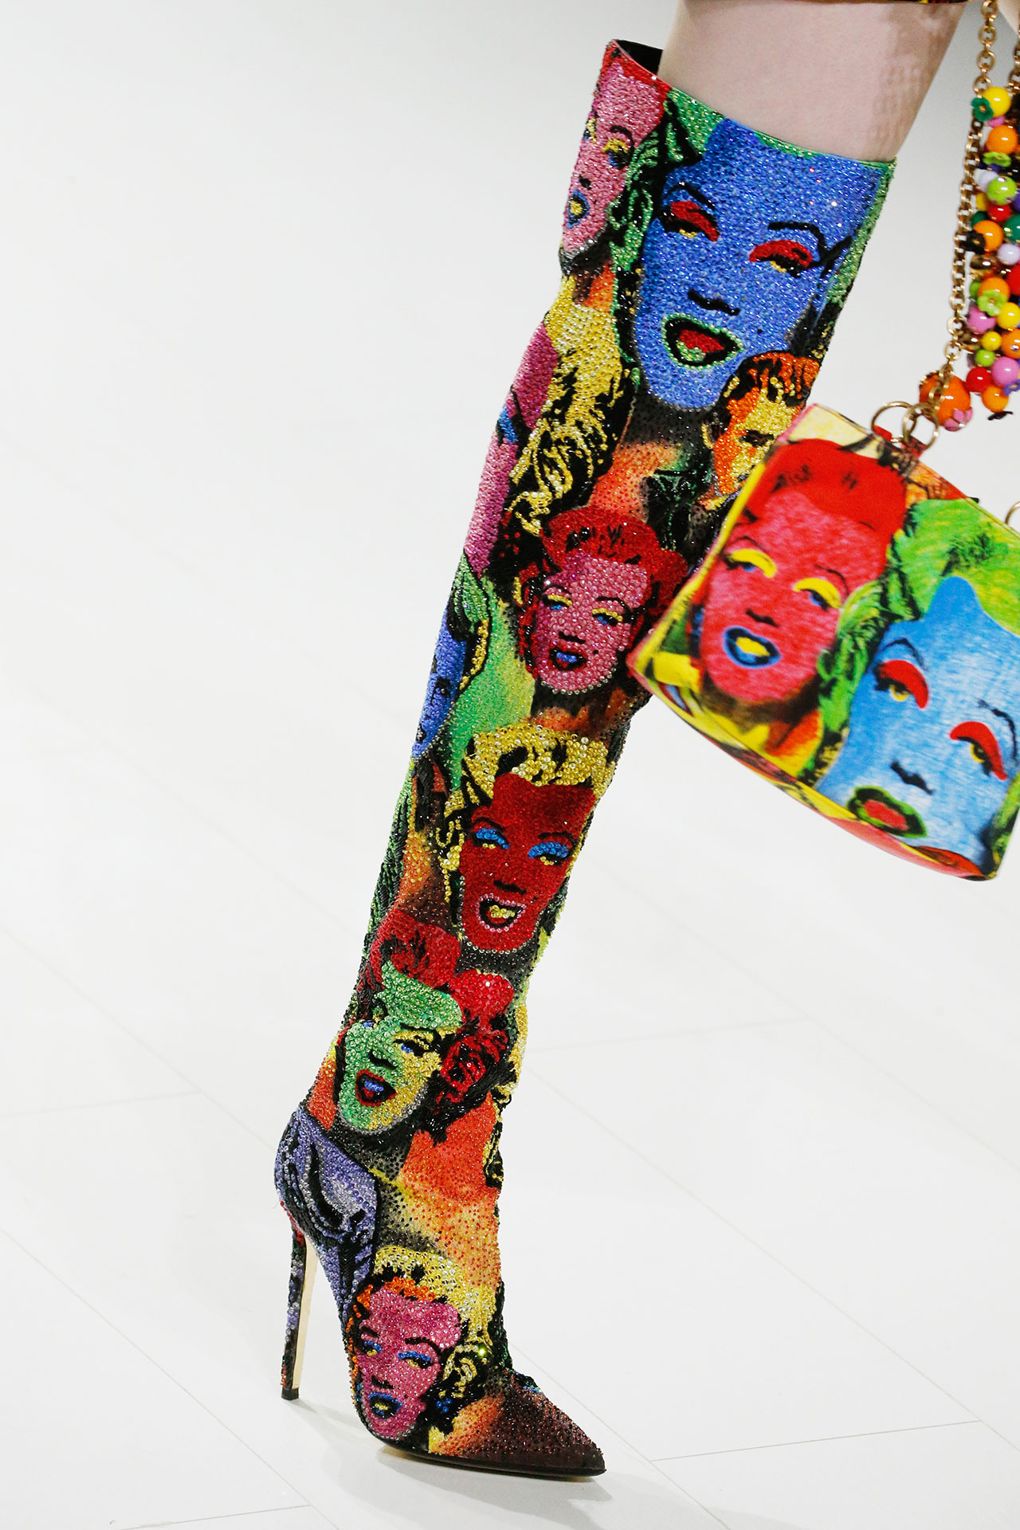 Là một trong những điểm nhấn đặc biệt của show diễn tri ân Gianni Versace, mẫu boots đính đá với hoa văn pop-art hứa hẹn trở thành một trong những thiết kế giày được săn đón nhất của mùa Xuân Hè 2018.